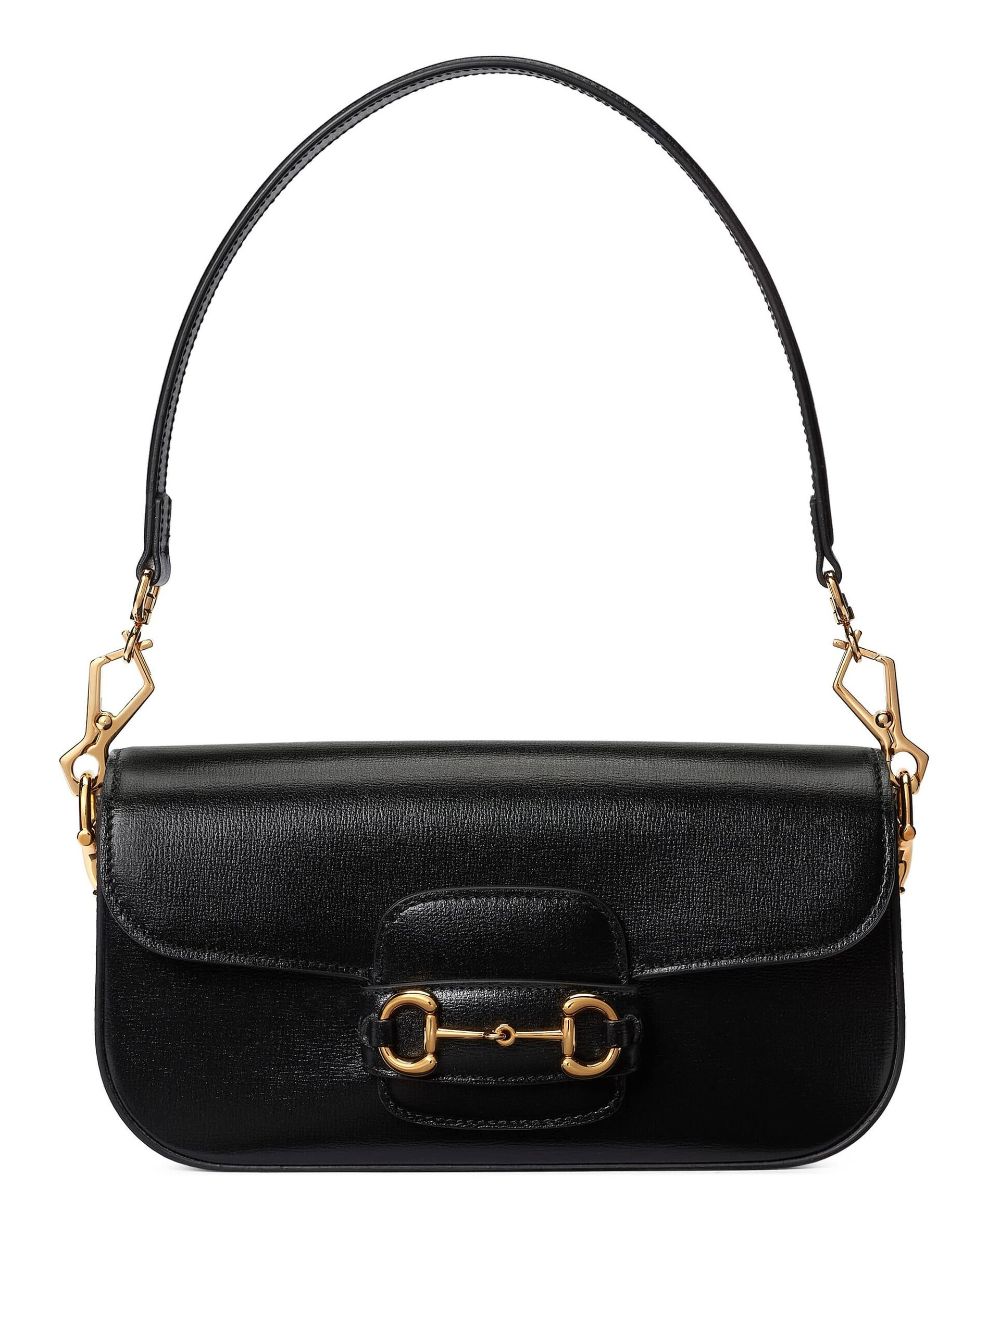 Gucci small Horsebit 1955 shoulder bag - Black